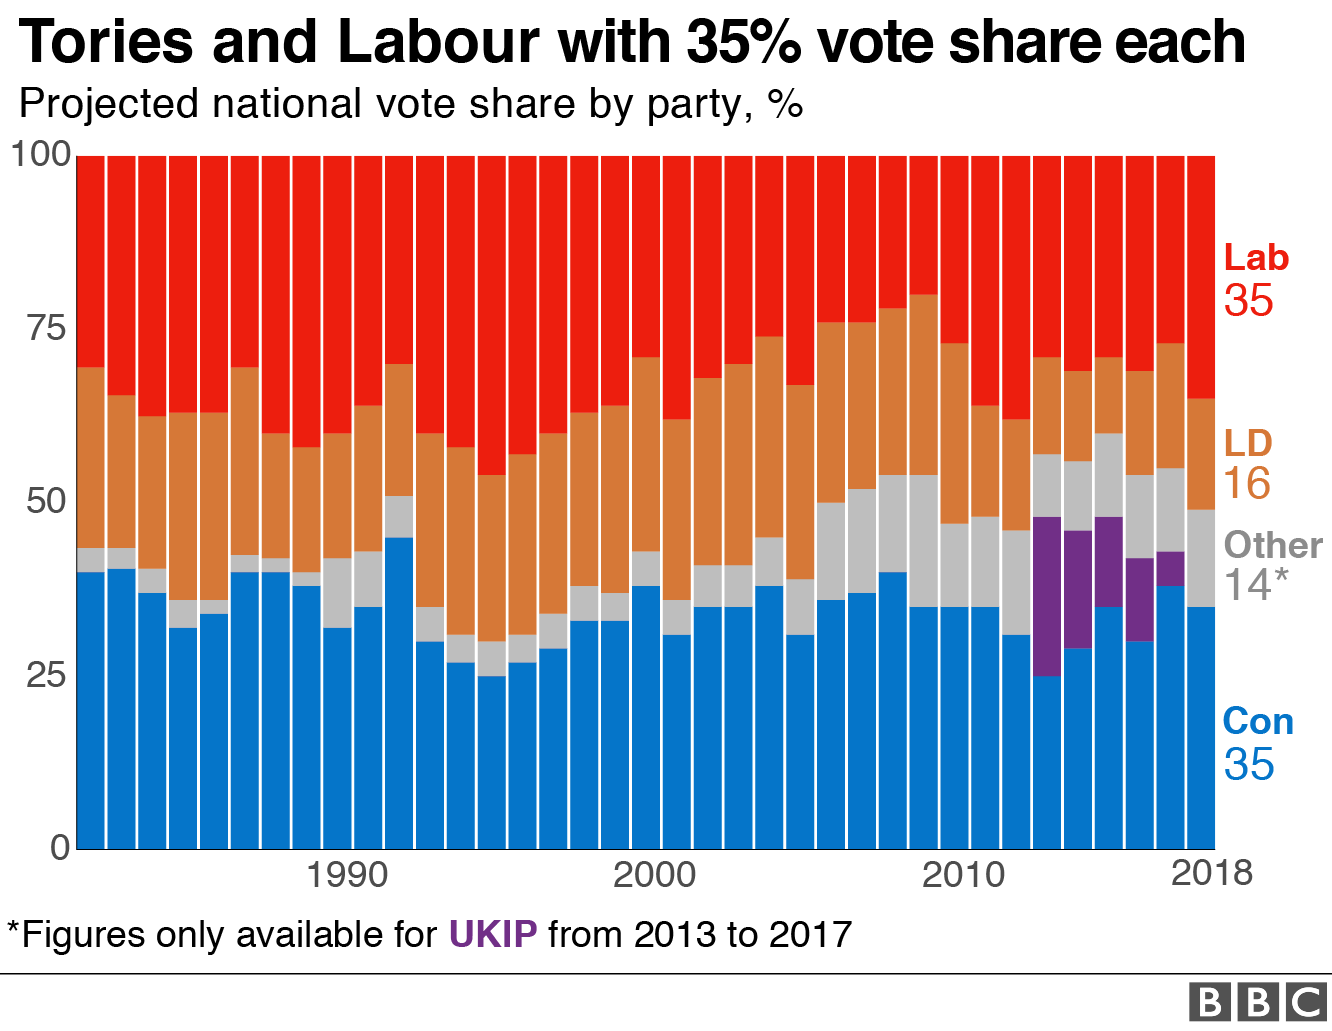 Диаграмма, показывающая прогнозируемую долю голосов для тори и лейбористов